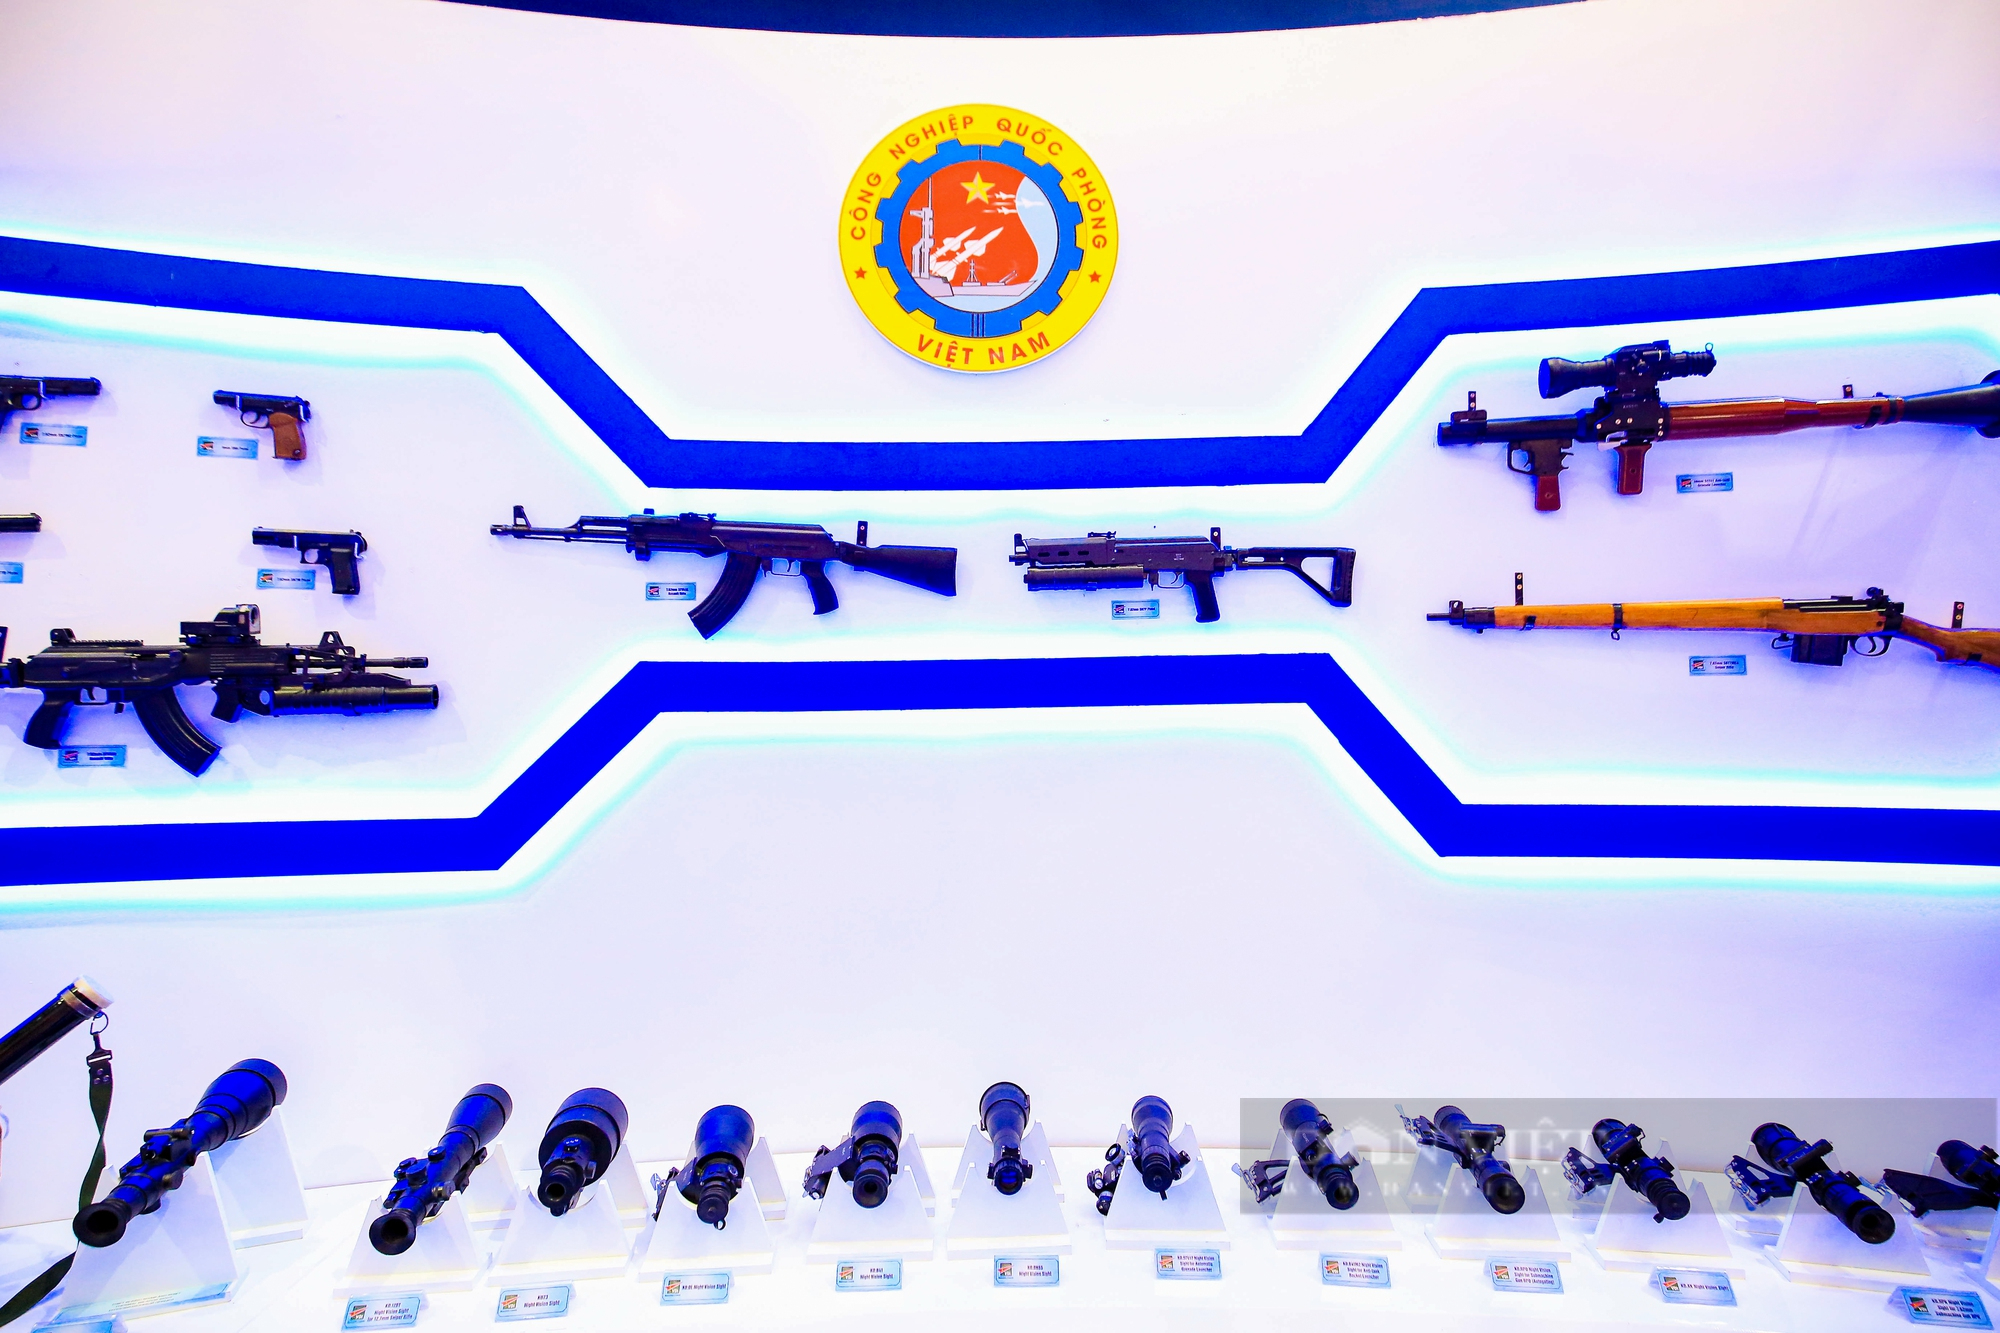 Cận cảnh dàn vũ khí, khí tài quân sự tại Triển lãm Quốc phòng quốc tế 2022 - Ảnh 12.